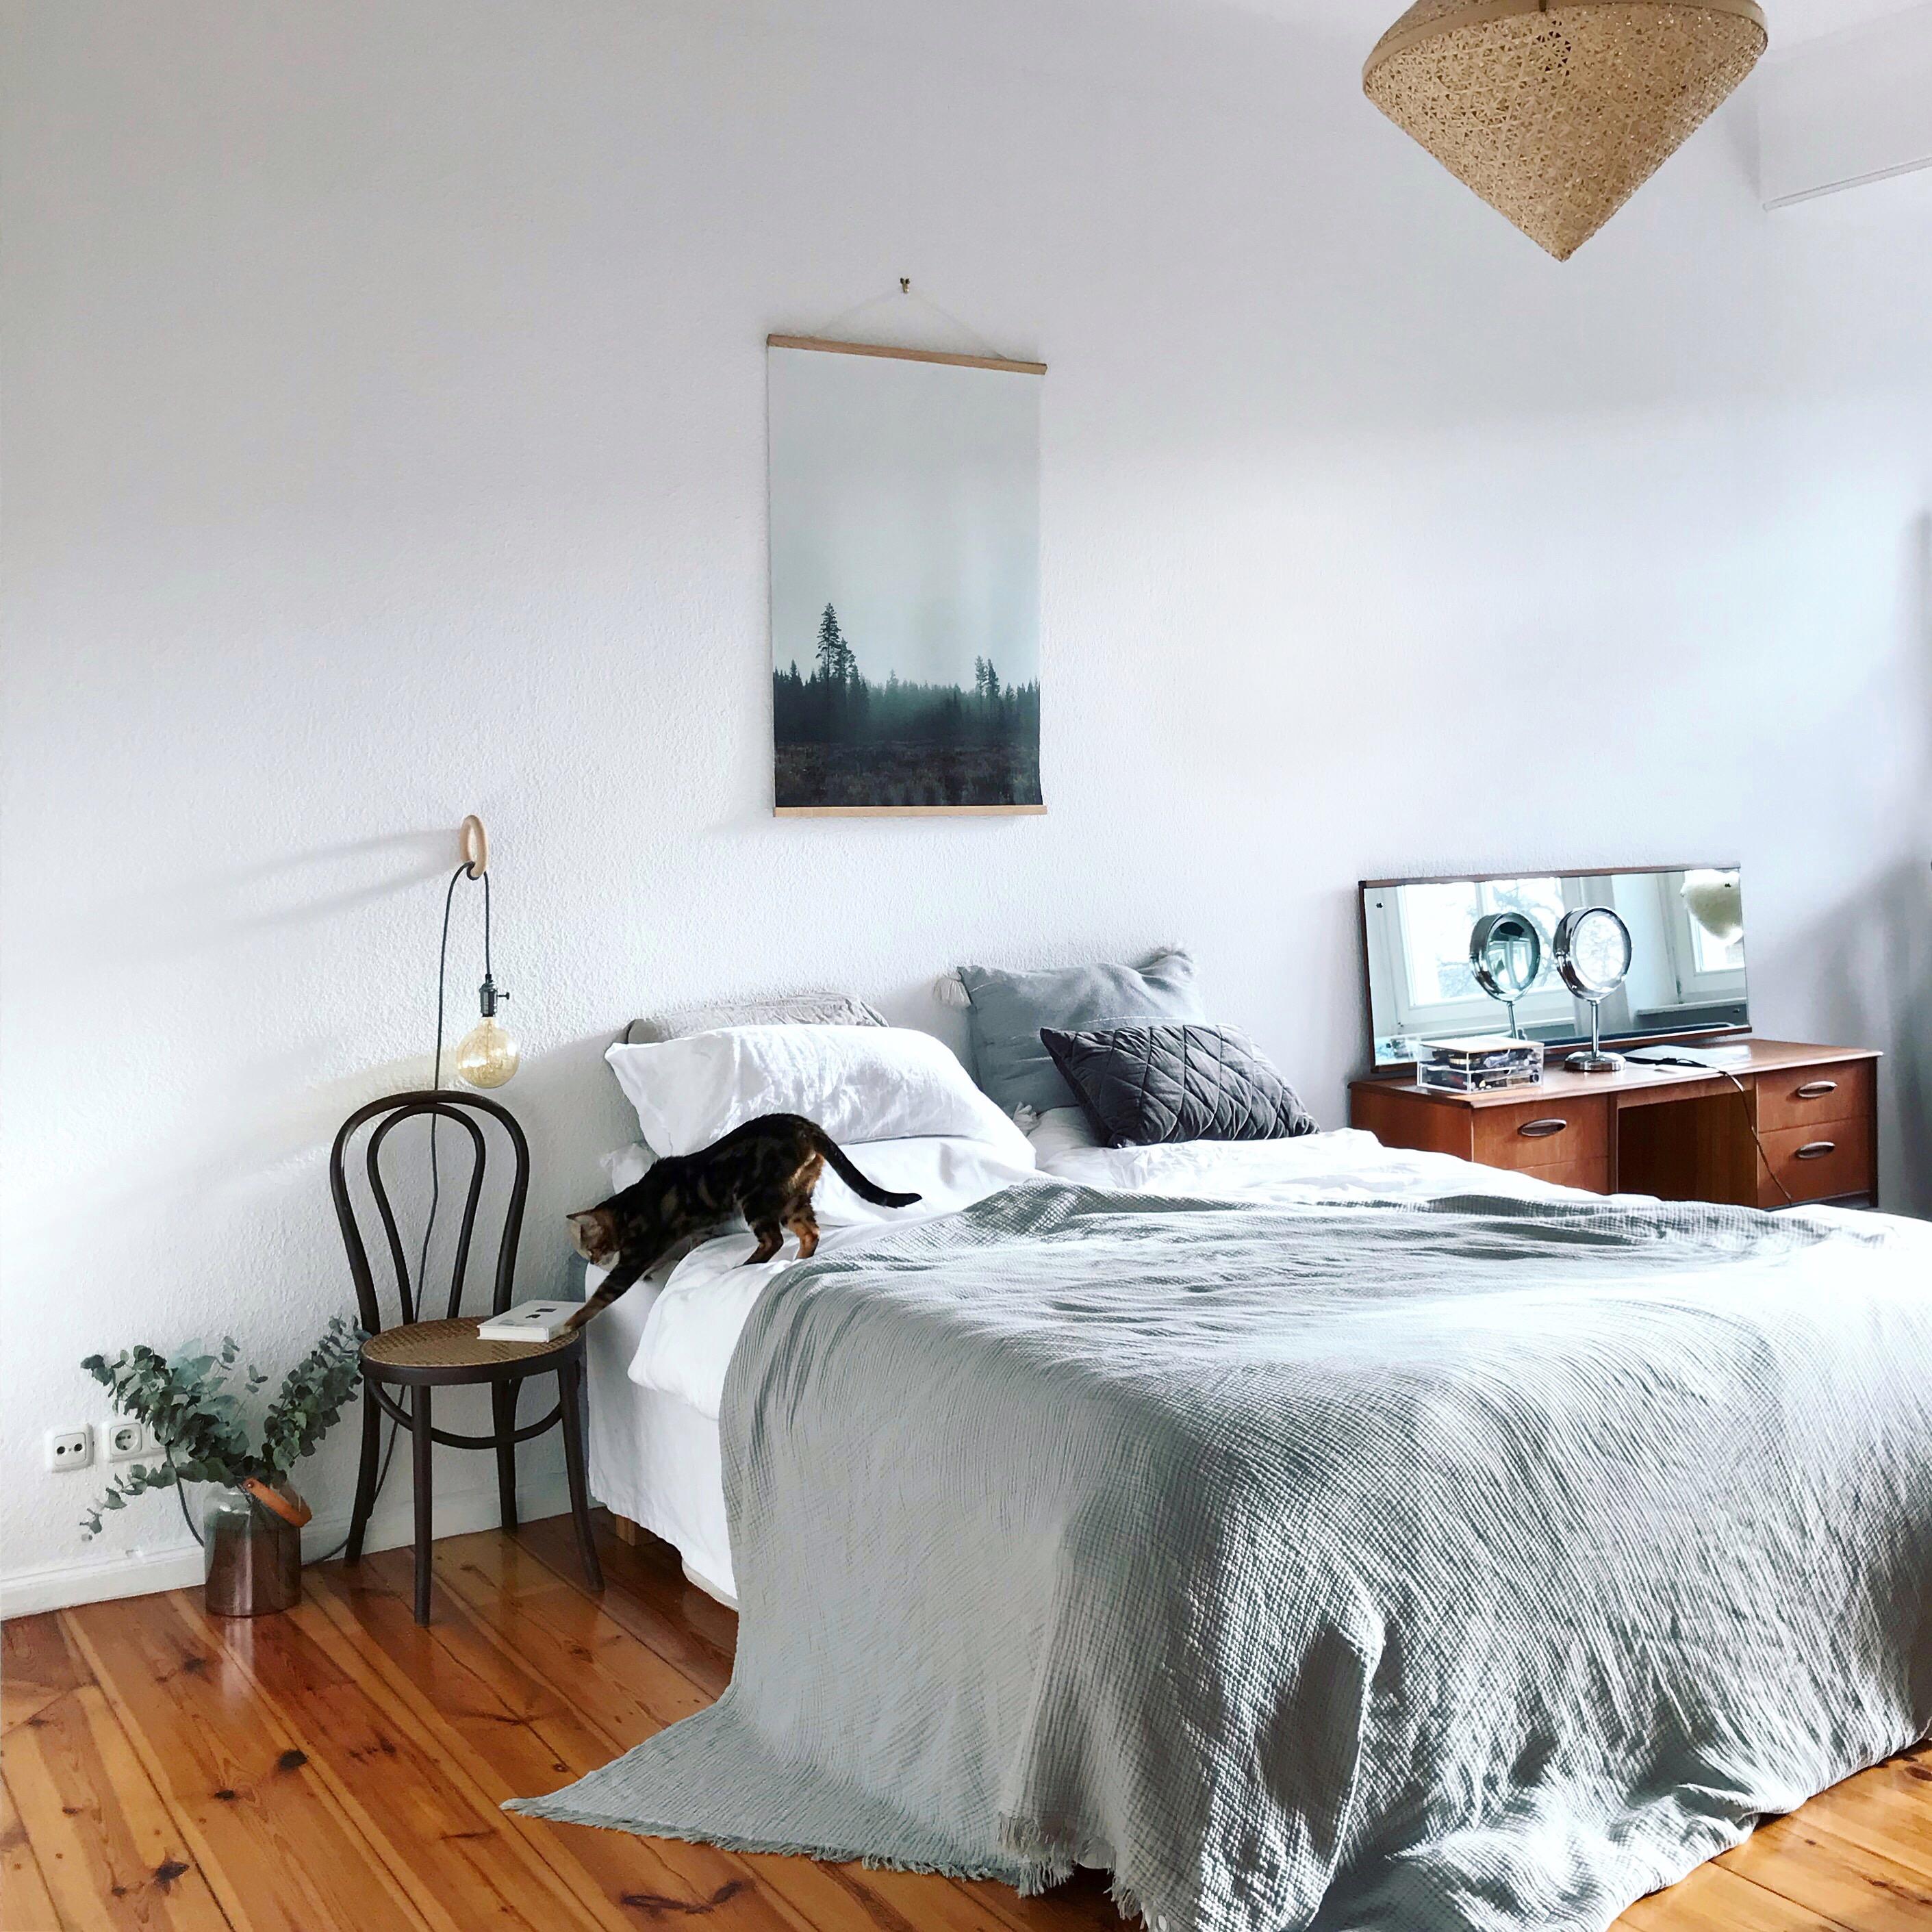 Schlafzimmer im Katzenhaushalt. 
#neuhier #couchliebt